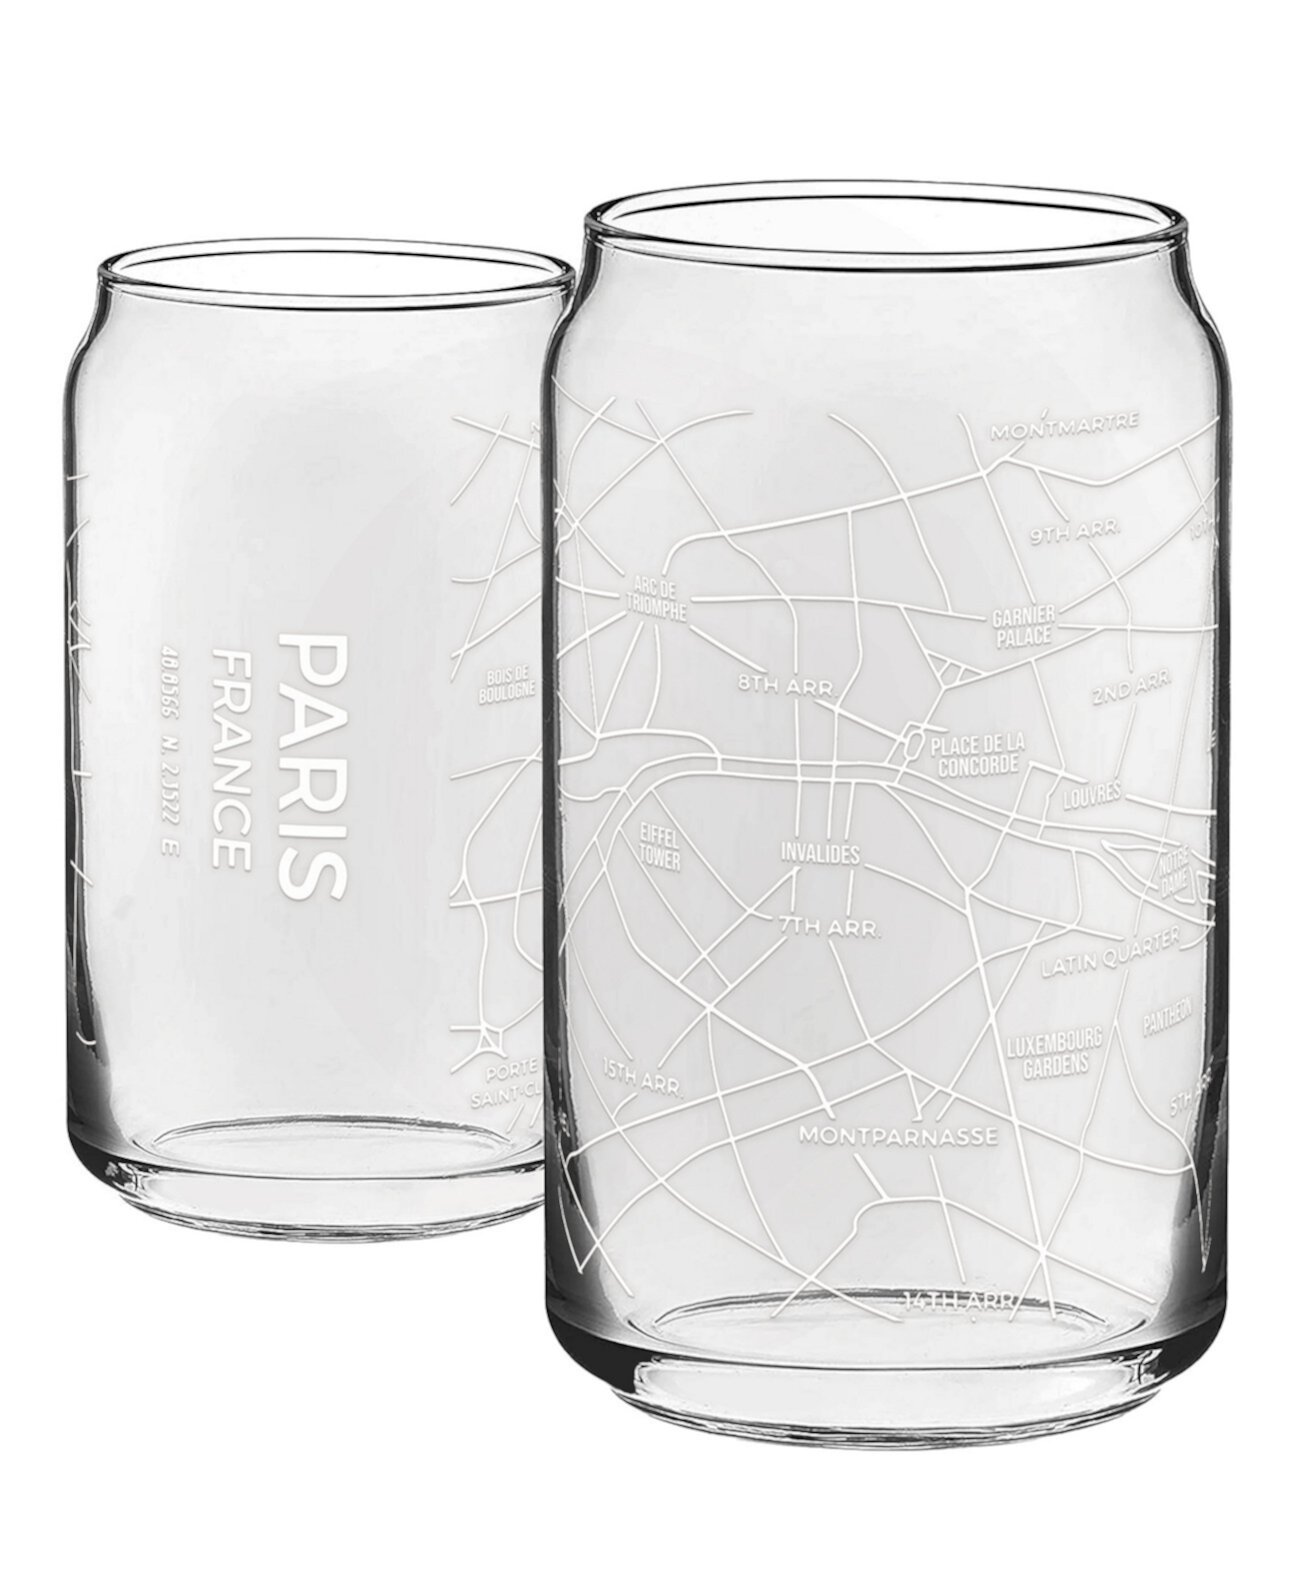 THE CAN Paris Map Стеклянная посуда на каждый день, 16 унций, набор из 2 шт. NARBO